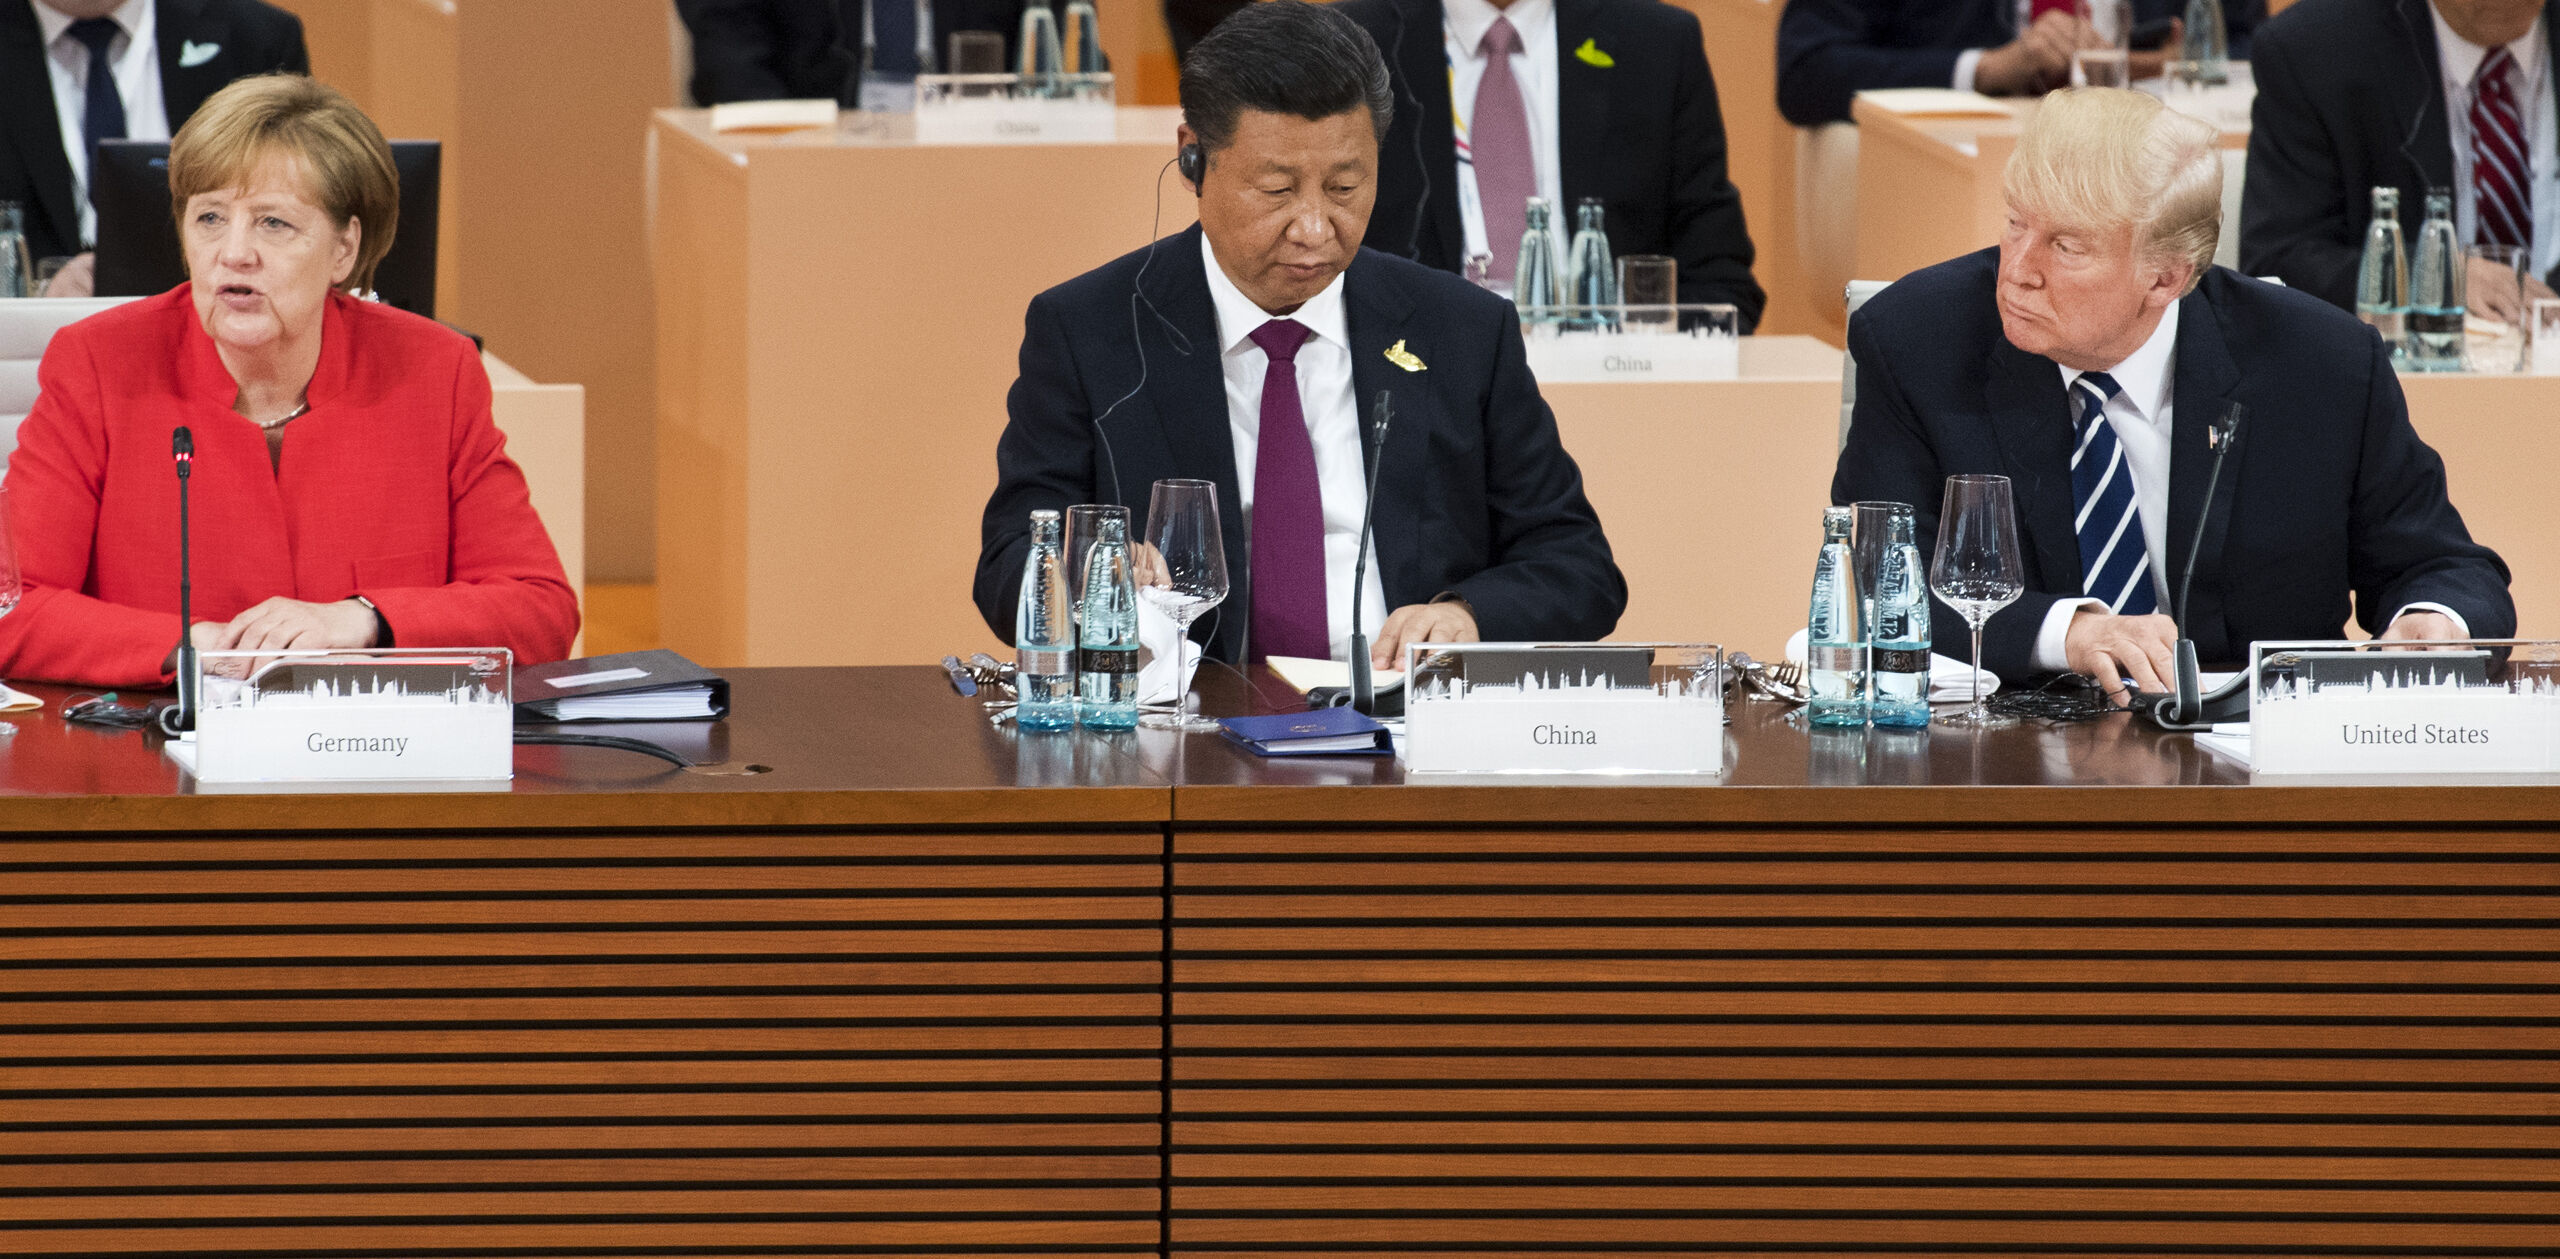 Bondskanselier Angela Merkel, president Xi Jinping en president Trump tijdens de G20-top in Hamburg.